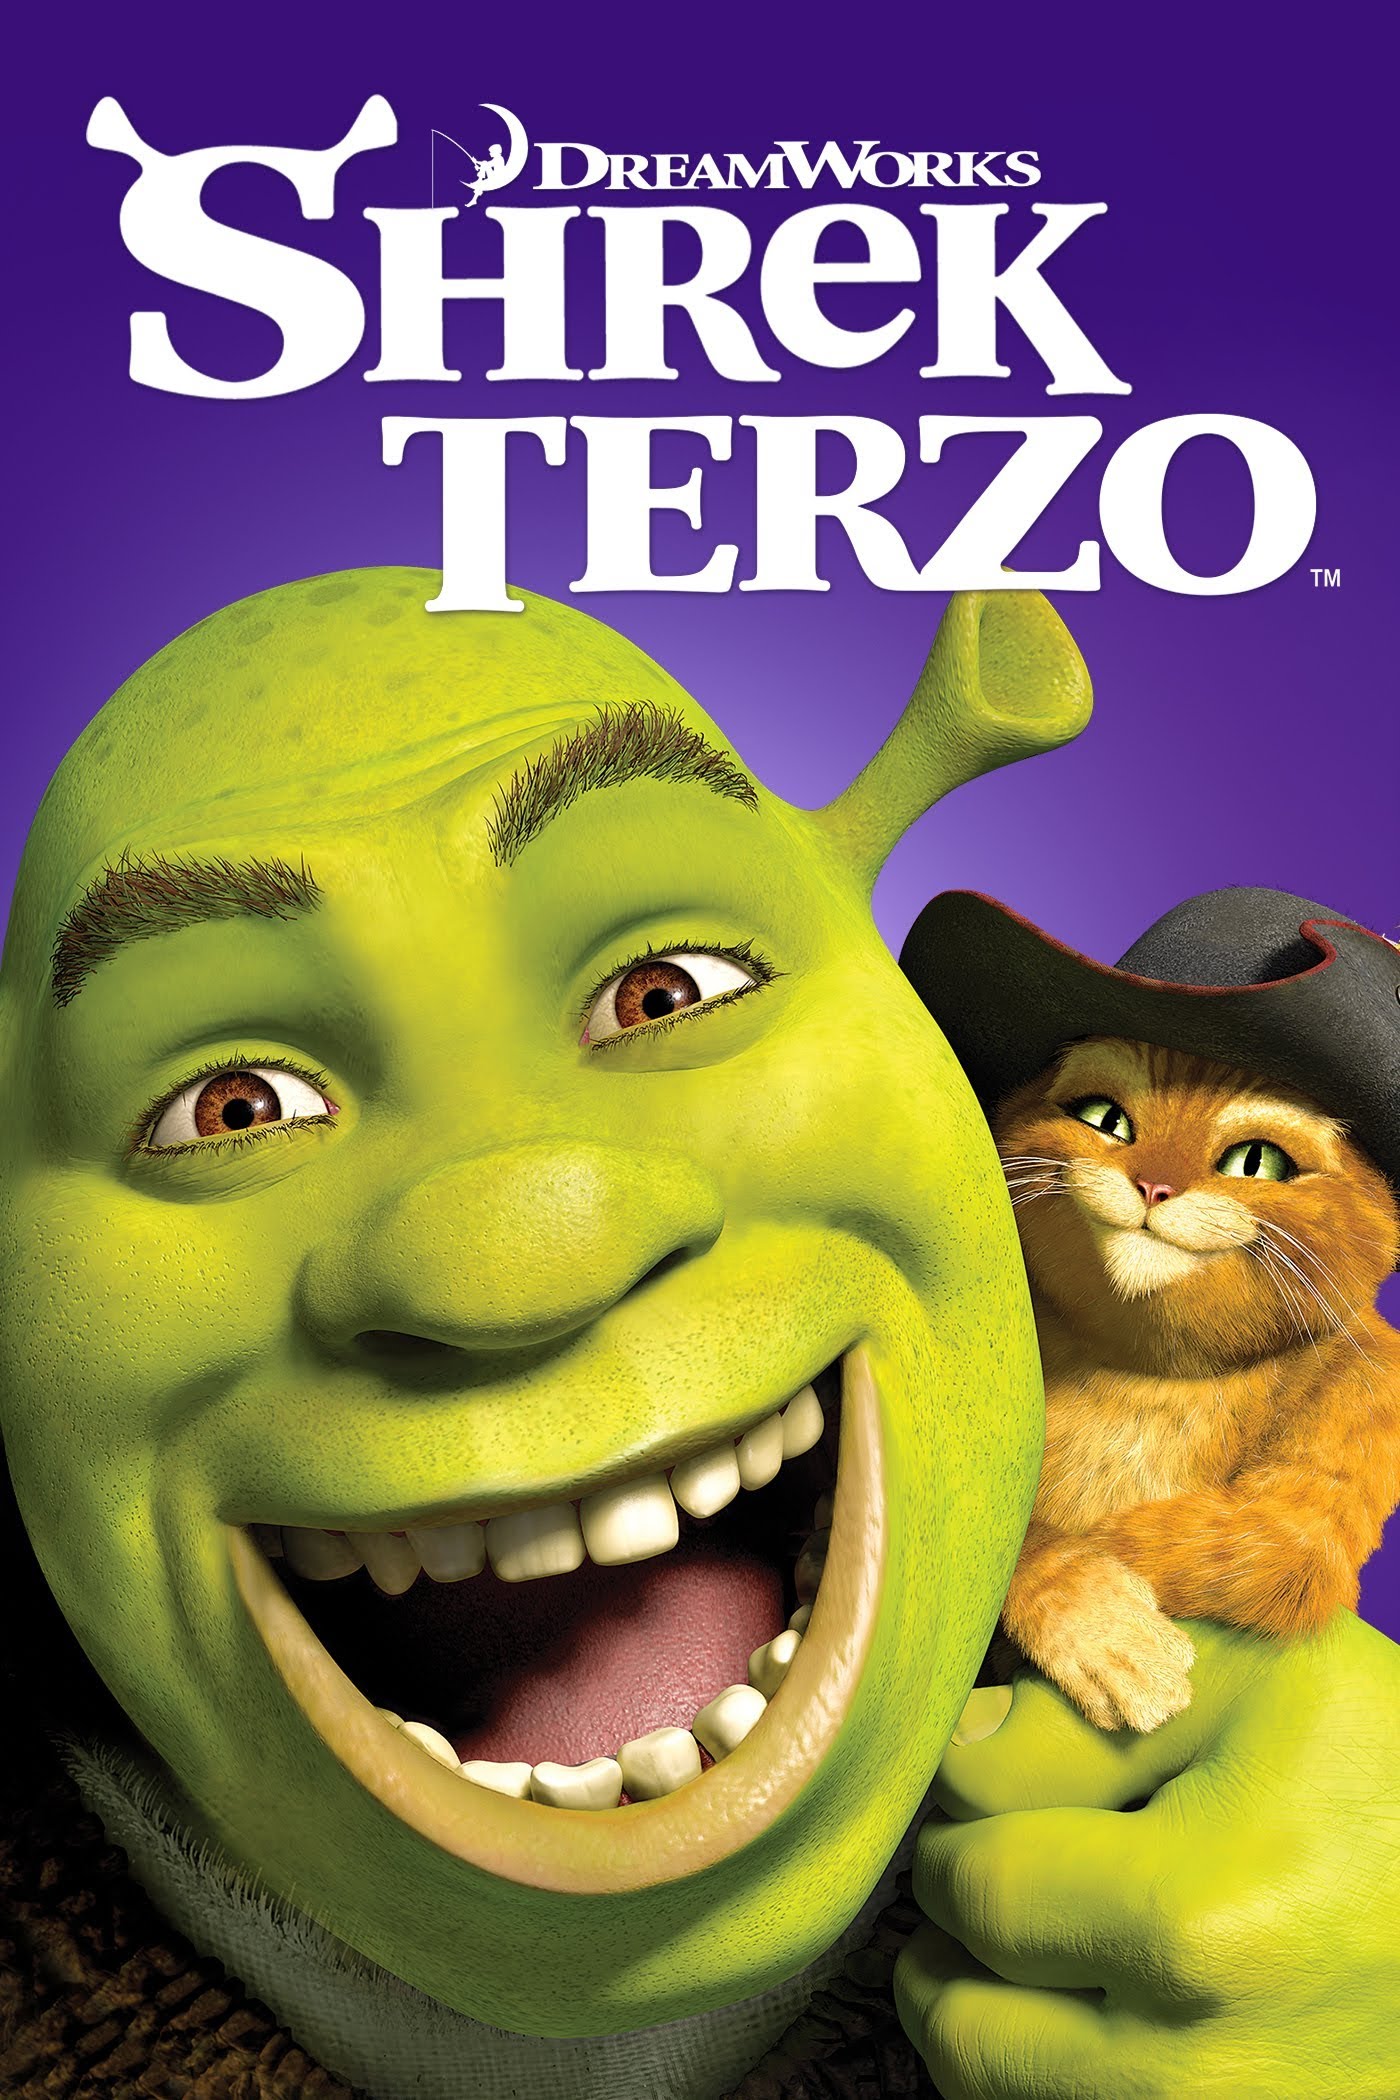 Shrek terzo [HD] (2007)